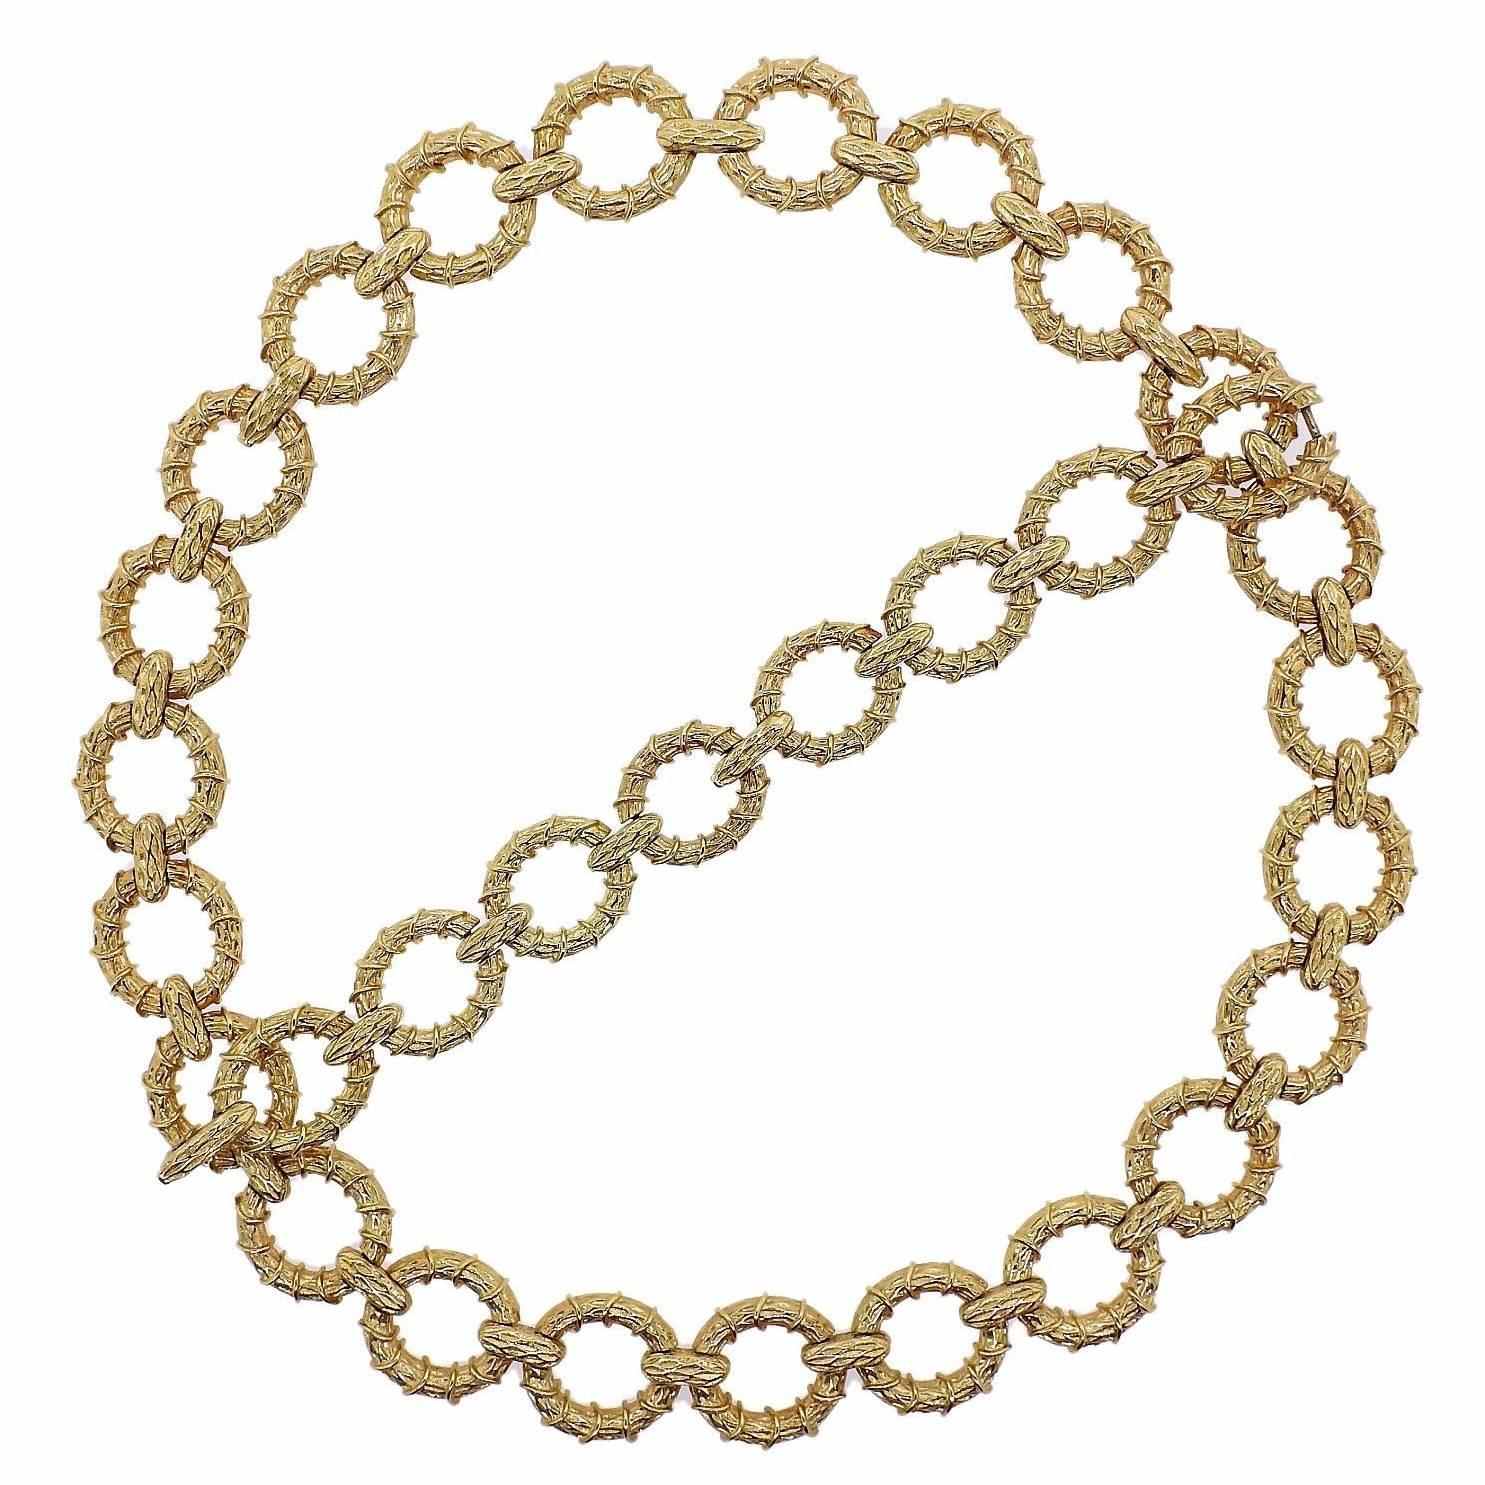 1970s Oval Link Gold Necklace Bracelet Suite